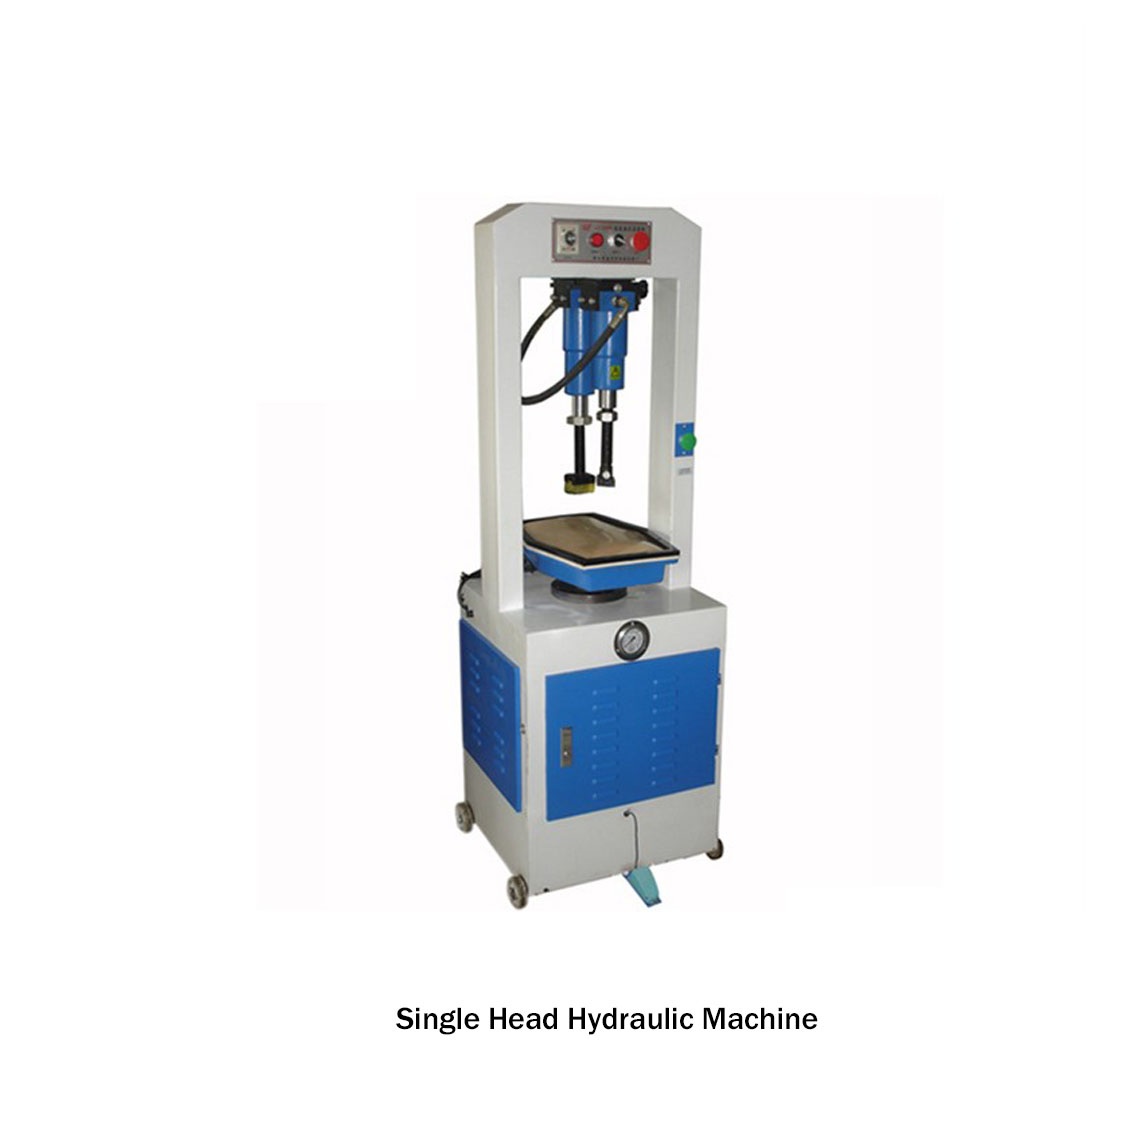 Single Head Hydraulic Machine